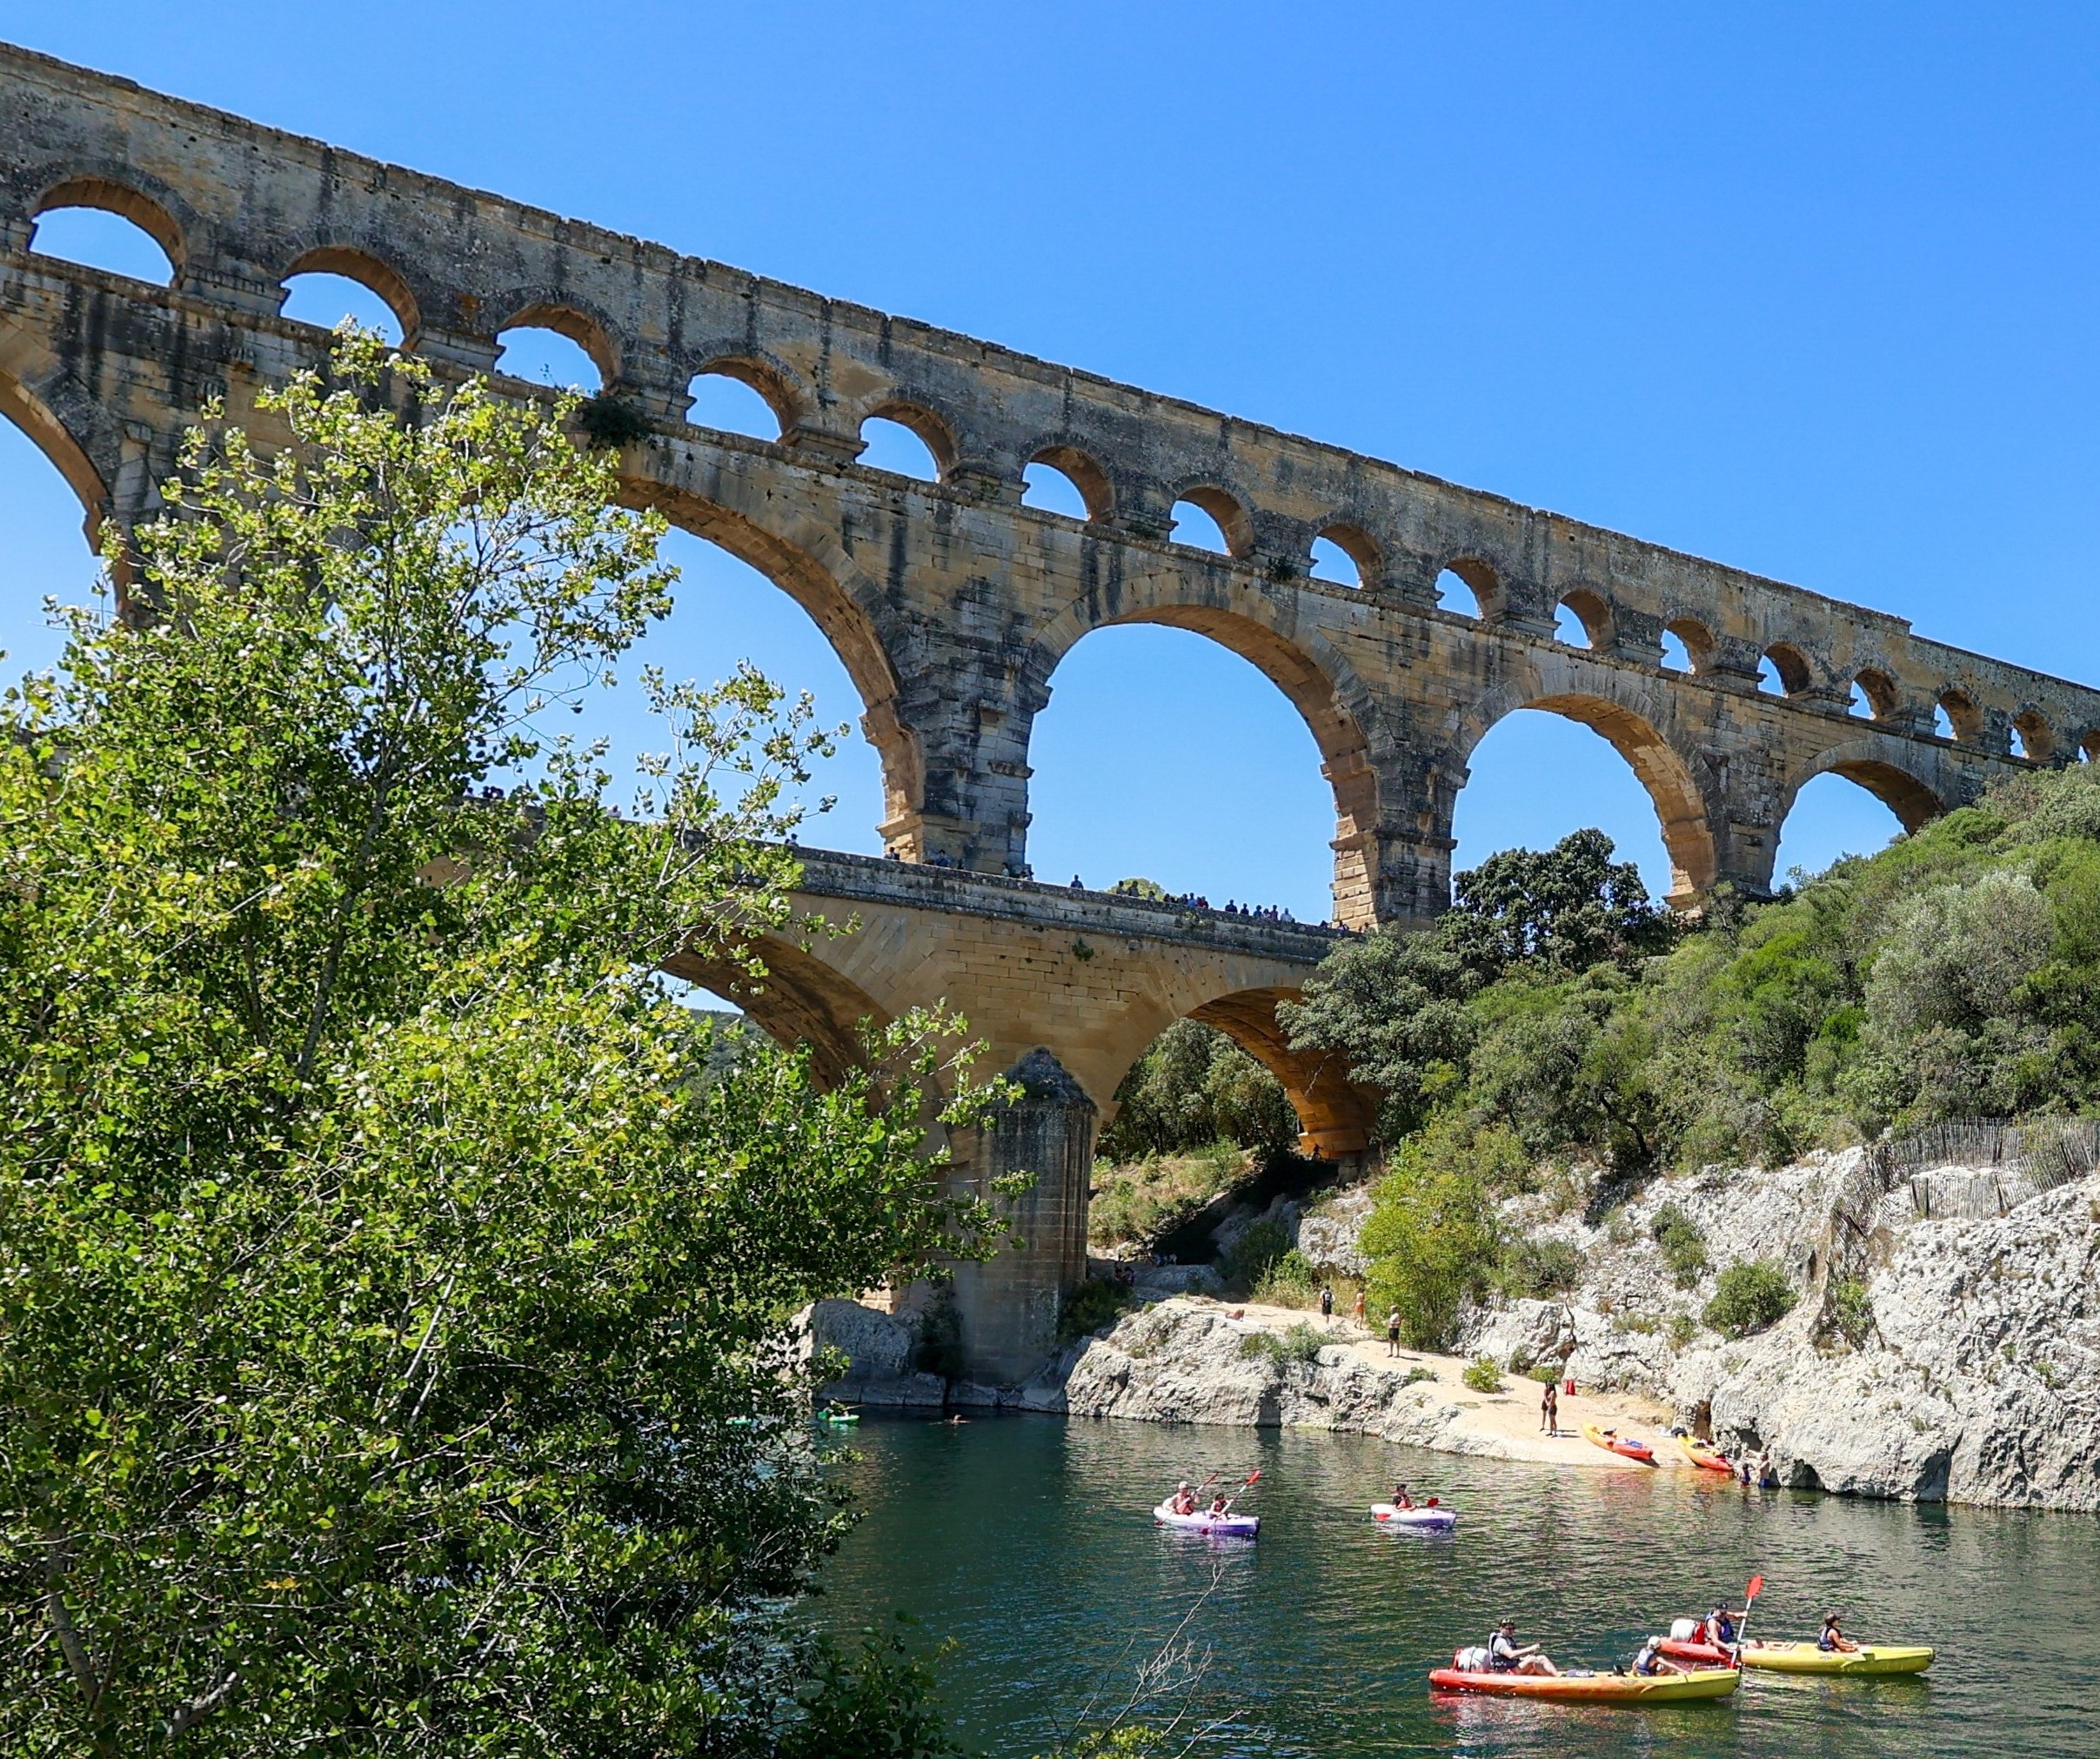 Le Pont du Gard, joyau touristique d'Occitanie. (Photo : CRTL Occitanie - Florence At)